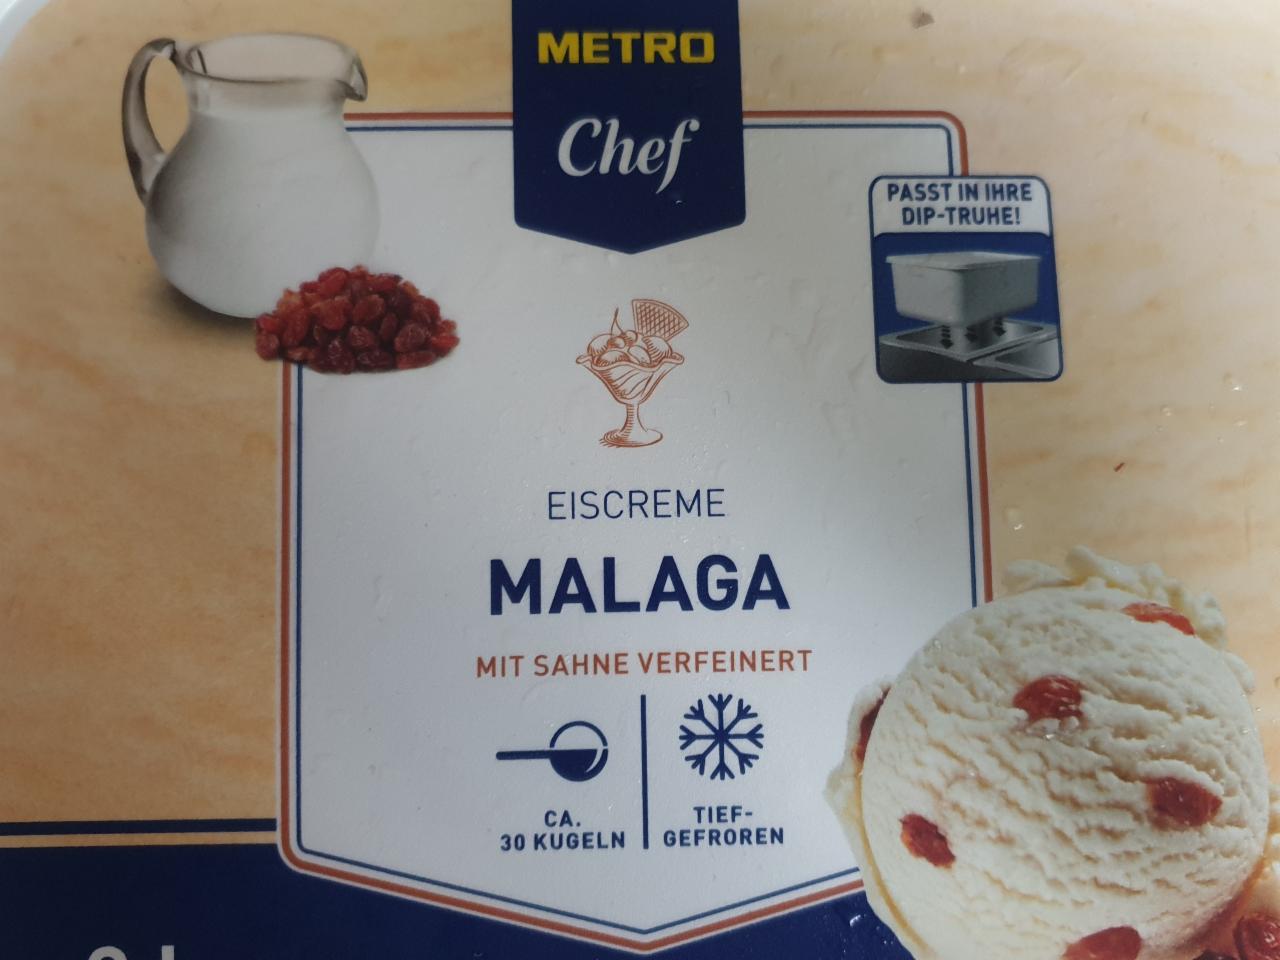 Fotografie - Eiscreme Malaga Metro Chef